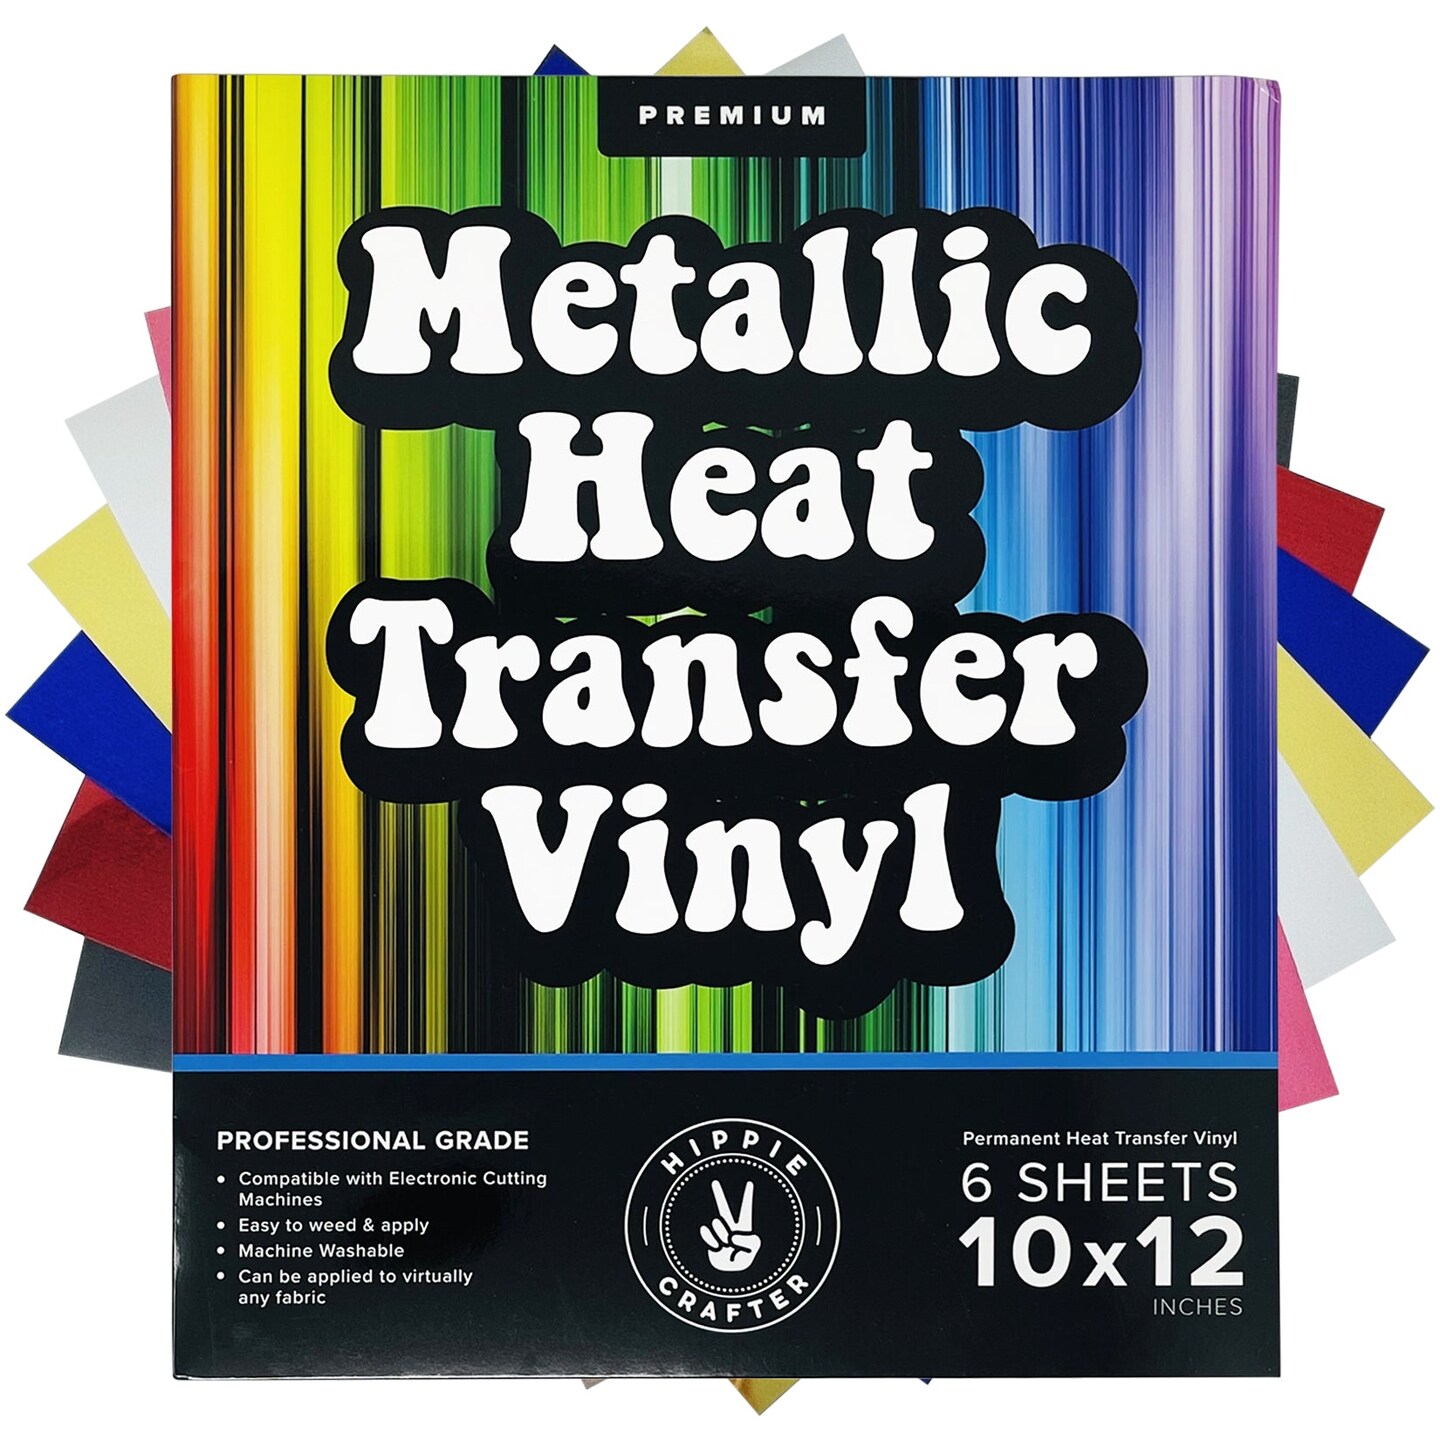 Metallic Vinyl Heat Transfer Vinyl Gold Vinyl Sheets Pink Chrome Silver Metalic Permanent Metallic Vinyl Foil Adhesive Vinyl Metallic HTV Pack Foil Vinyl Iron On Vinyl